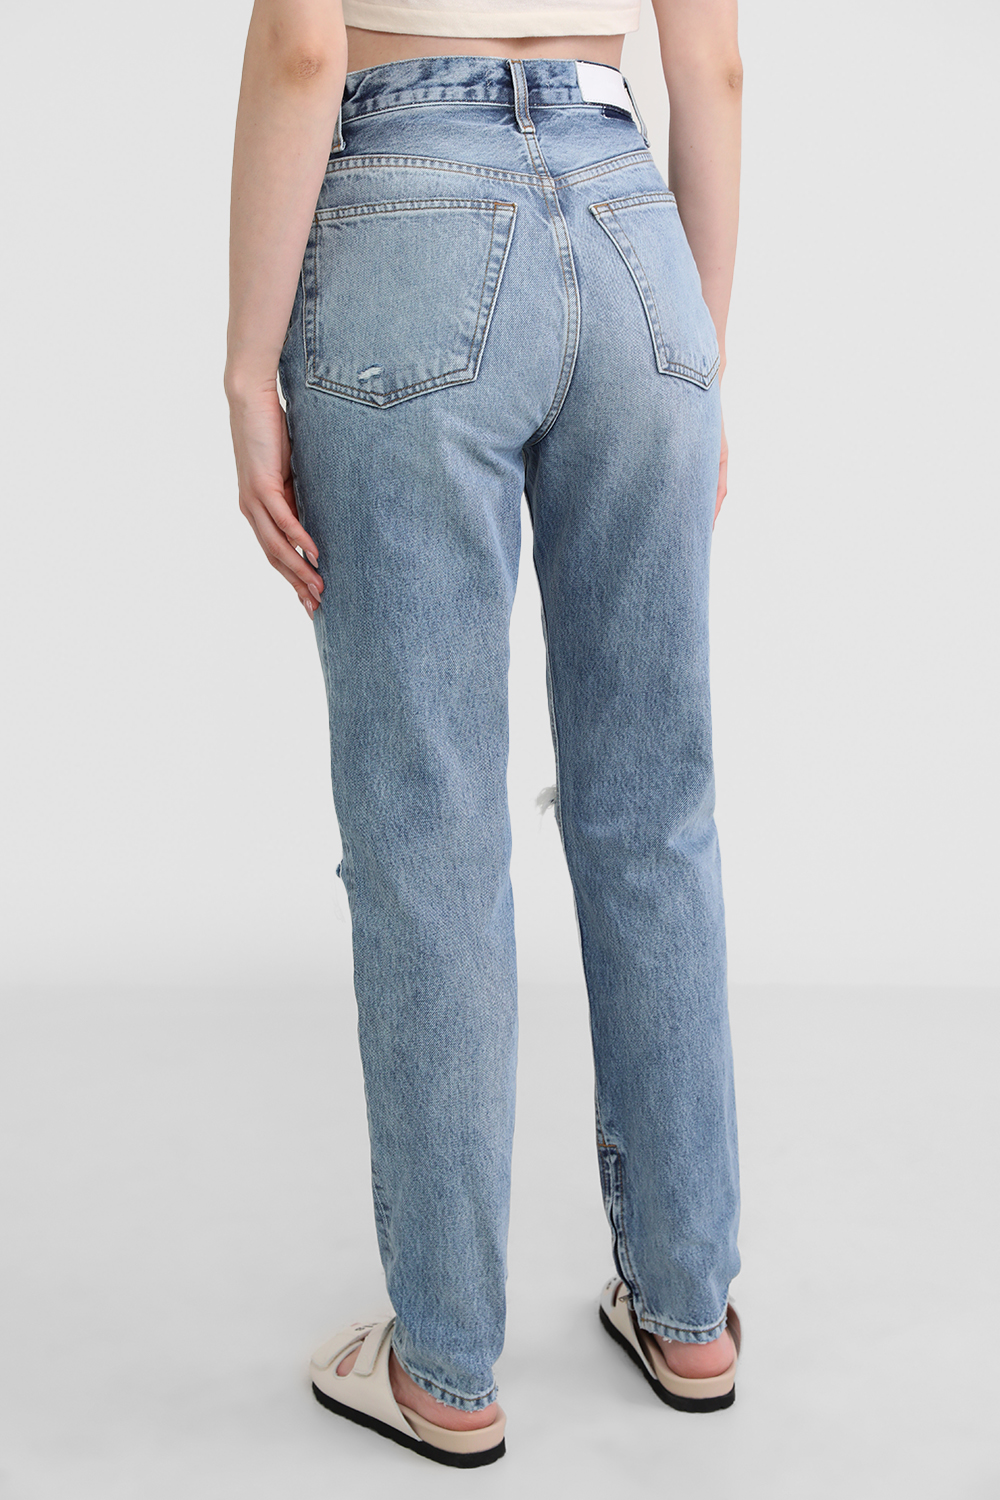 מכנסי ג'ינס בגזרה גבוהה RE/DONE